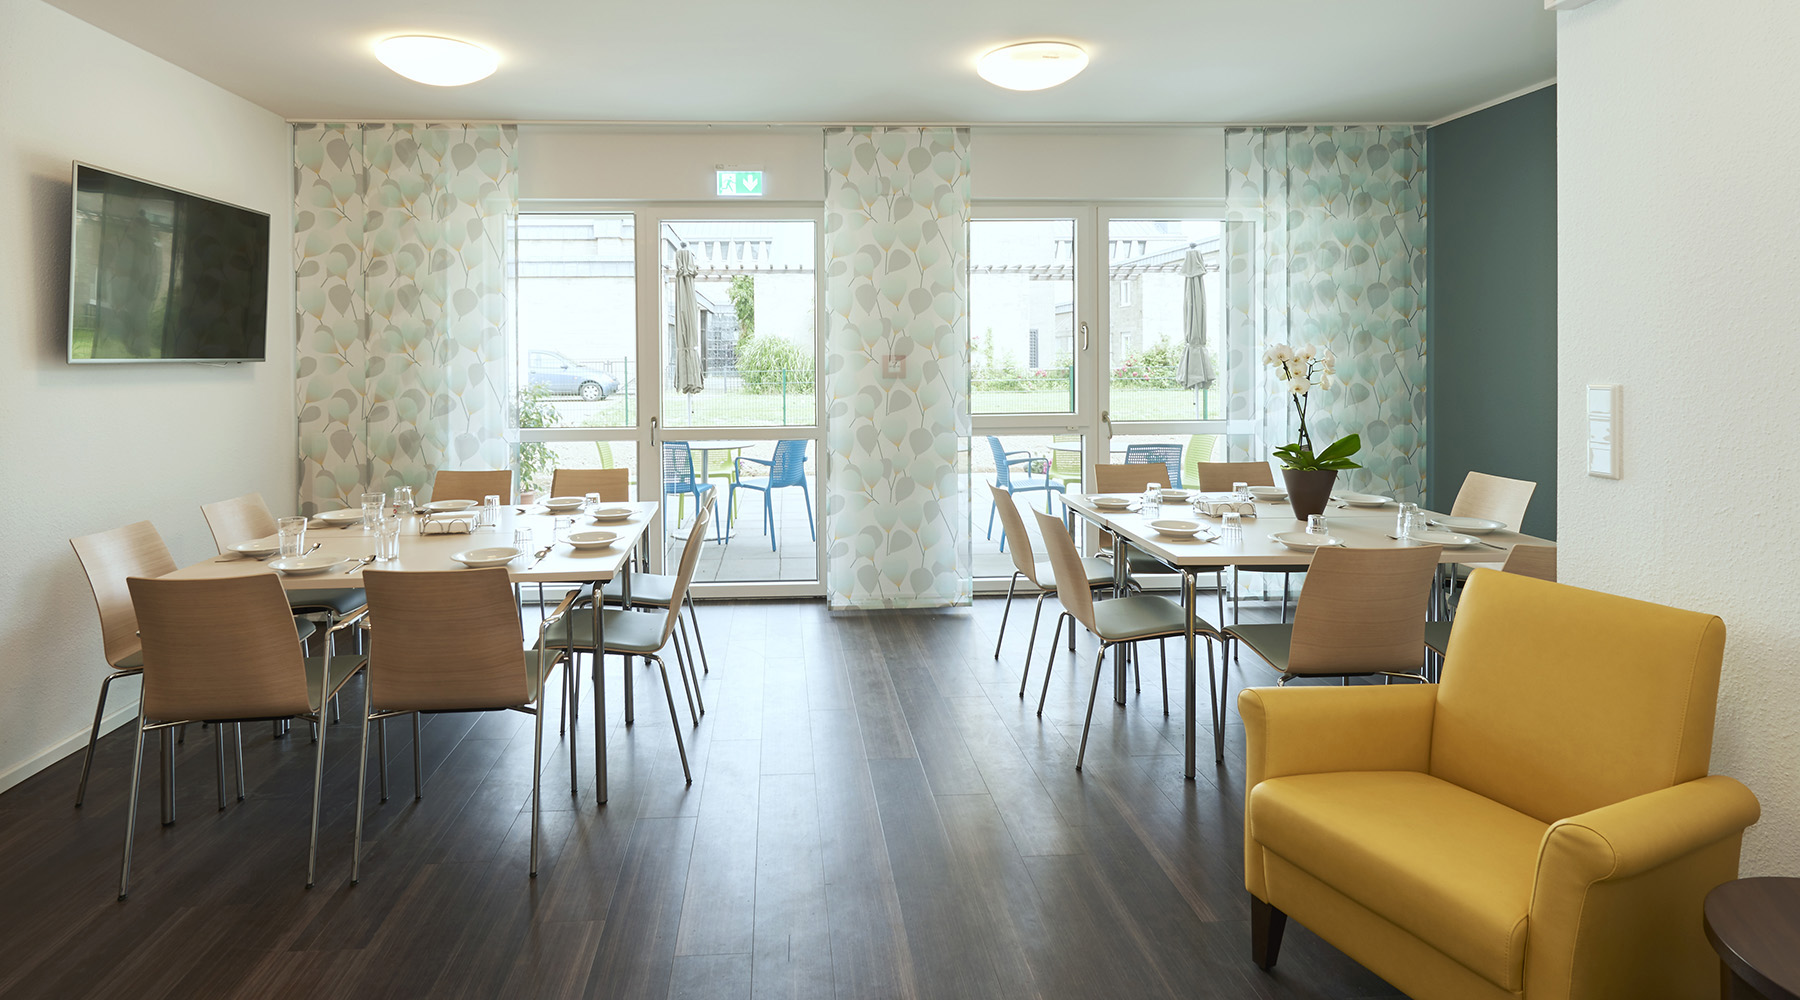 Ein Speisesaal mit direktem Zugang zur Terrasse. Zwei große gedeckte Esstische stehen im Raum und weiter vorne gelbe Sessel um einen Kaffeetisch.